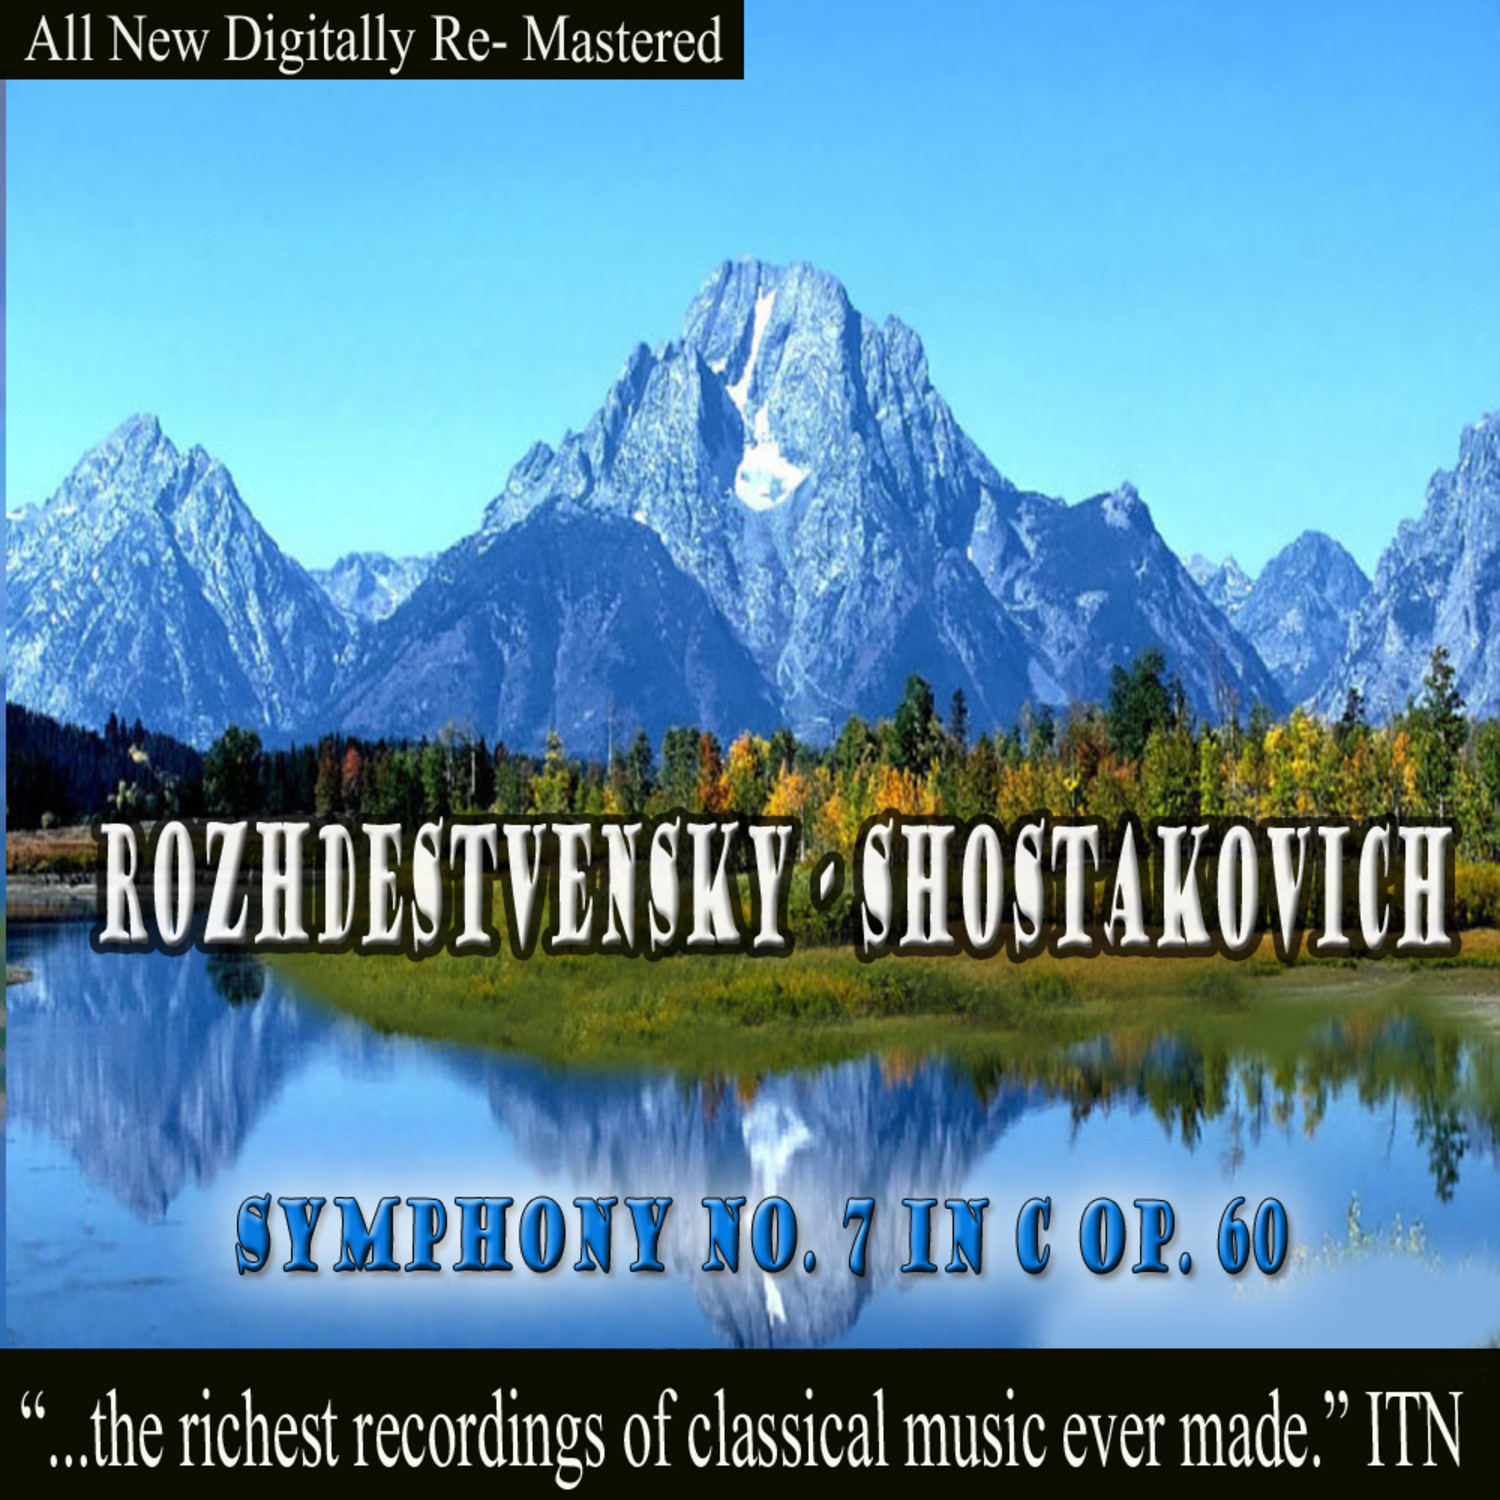 Shostakovich: Symphony No. 7 in C Op. 60